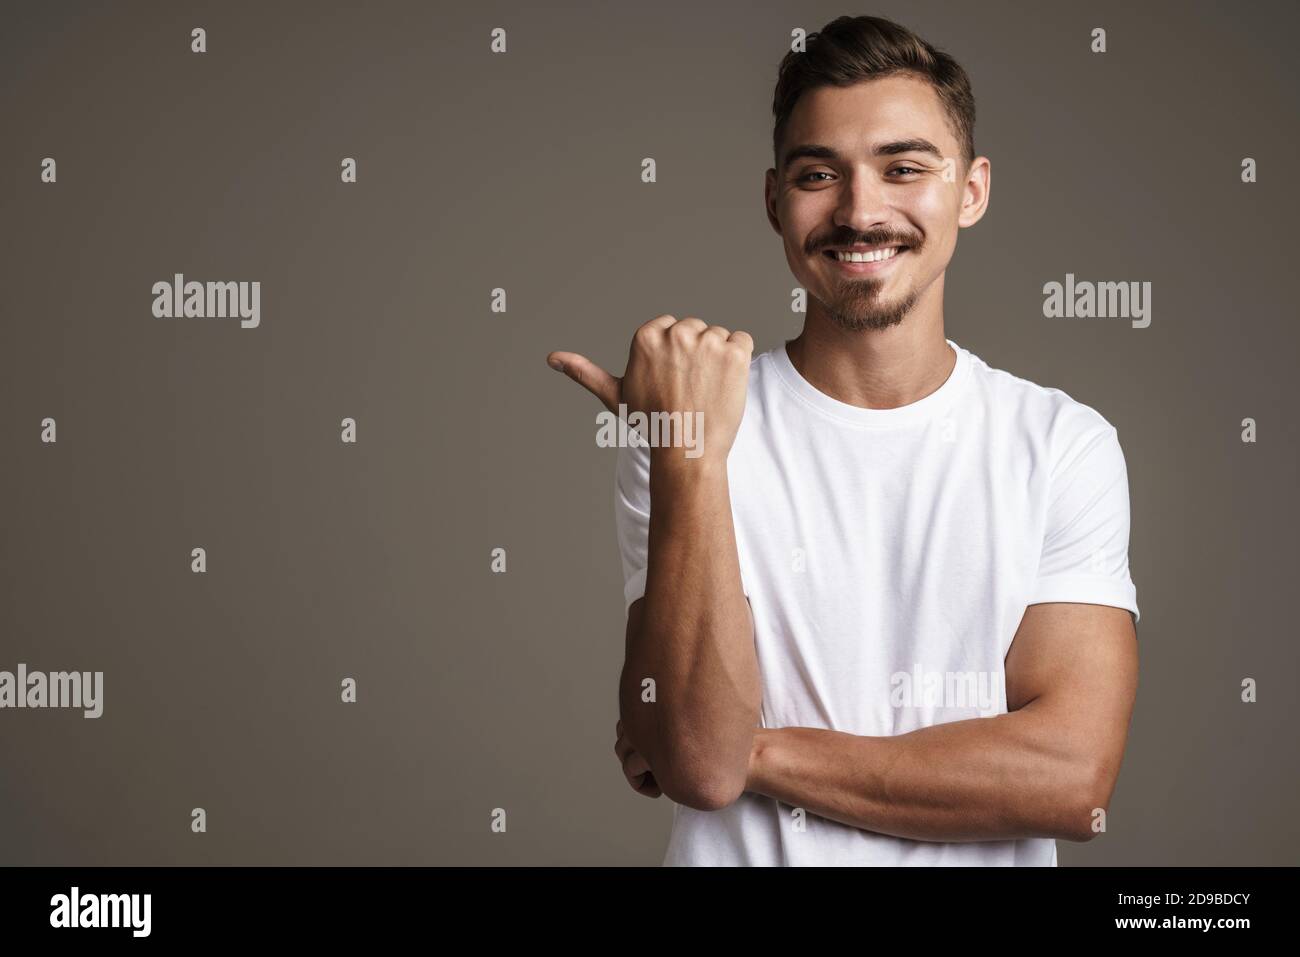 Image d'un gars joyeux et peu rasé souriant et pointant du doigt de côté isolé sur fond gris Banque D'Images